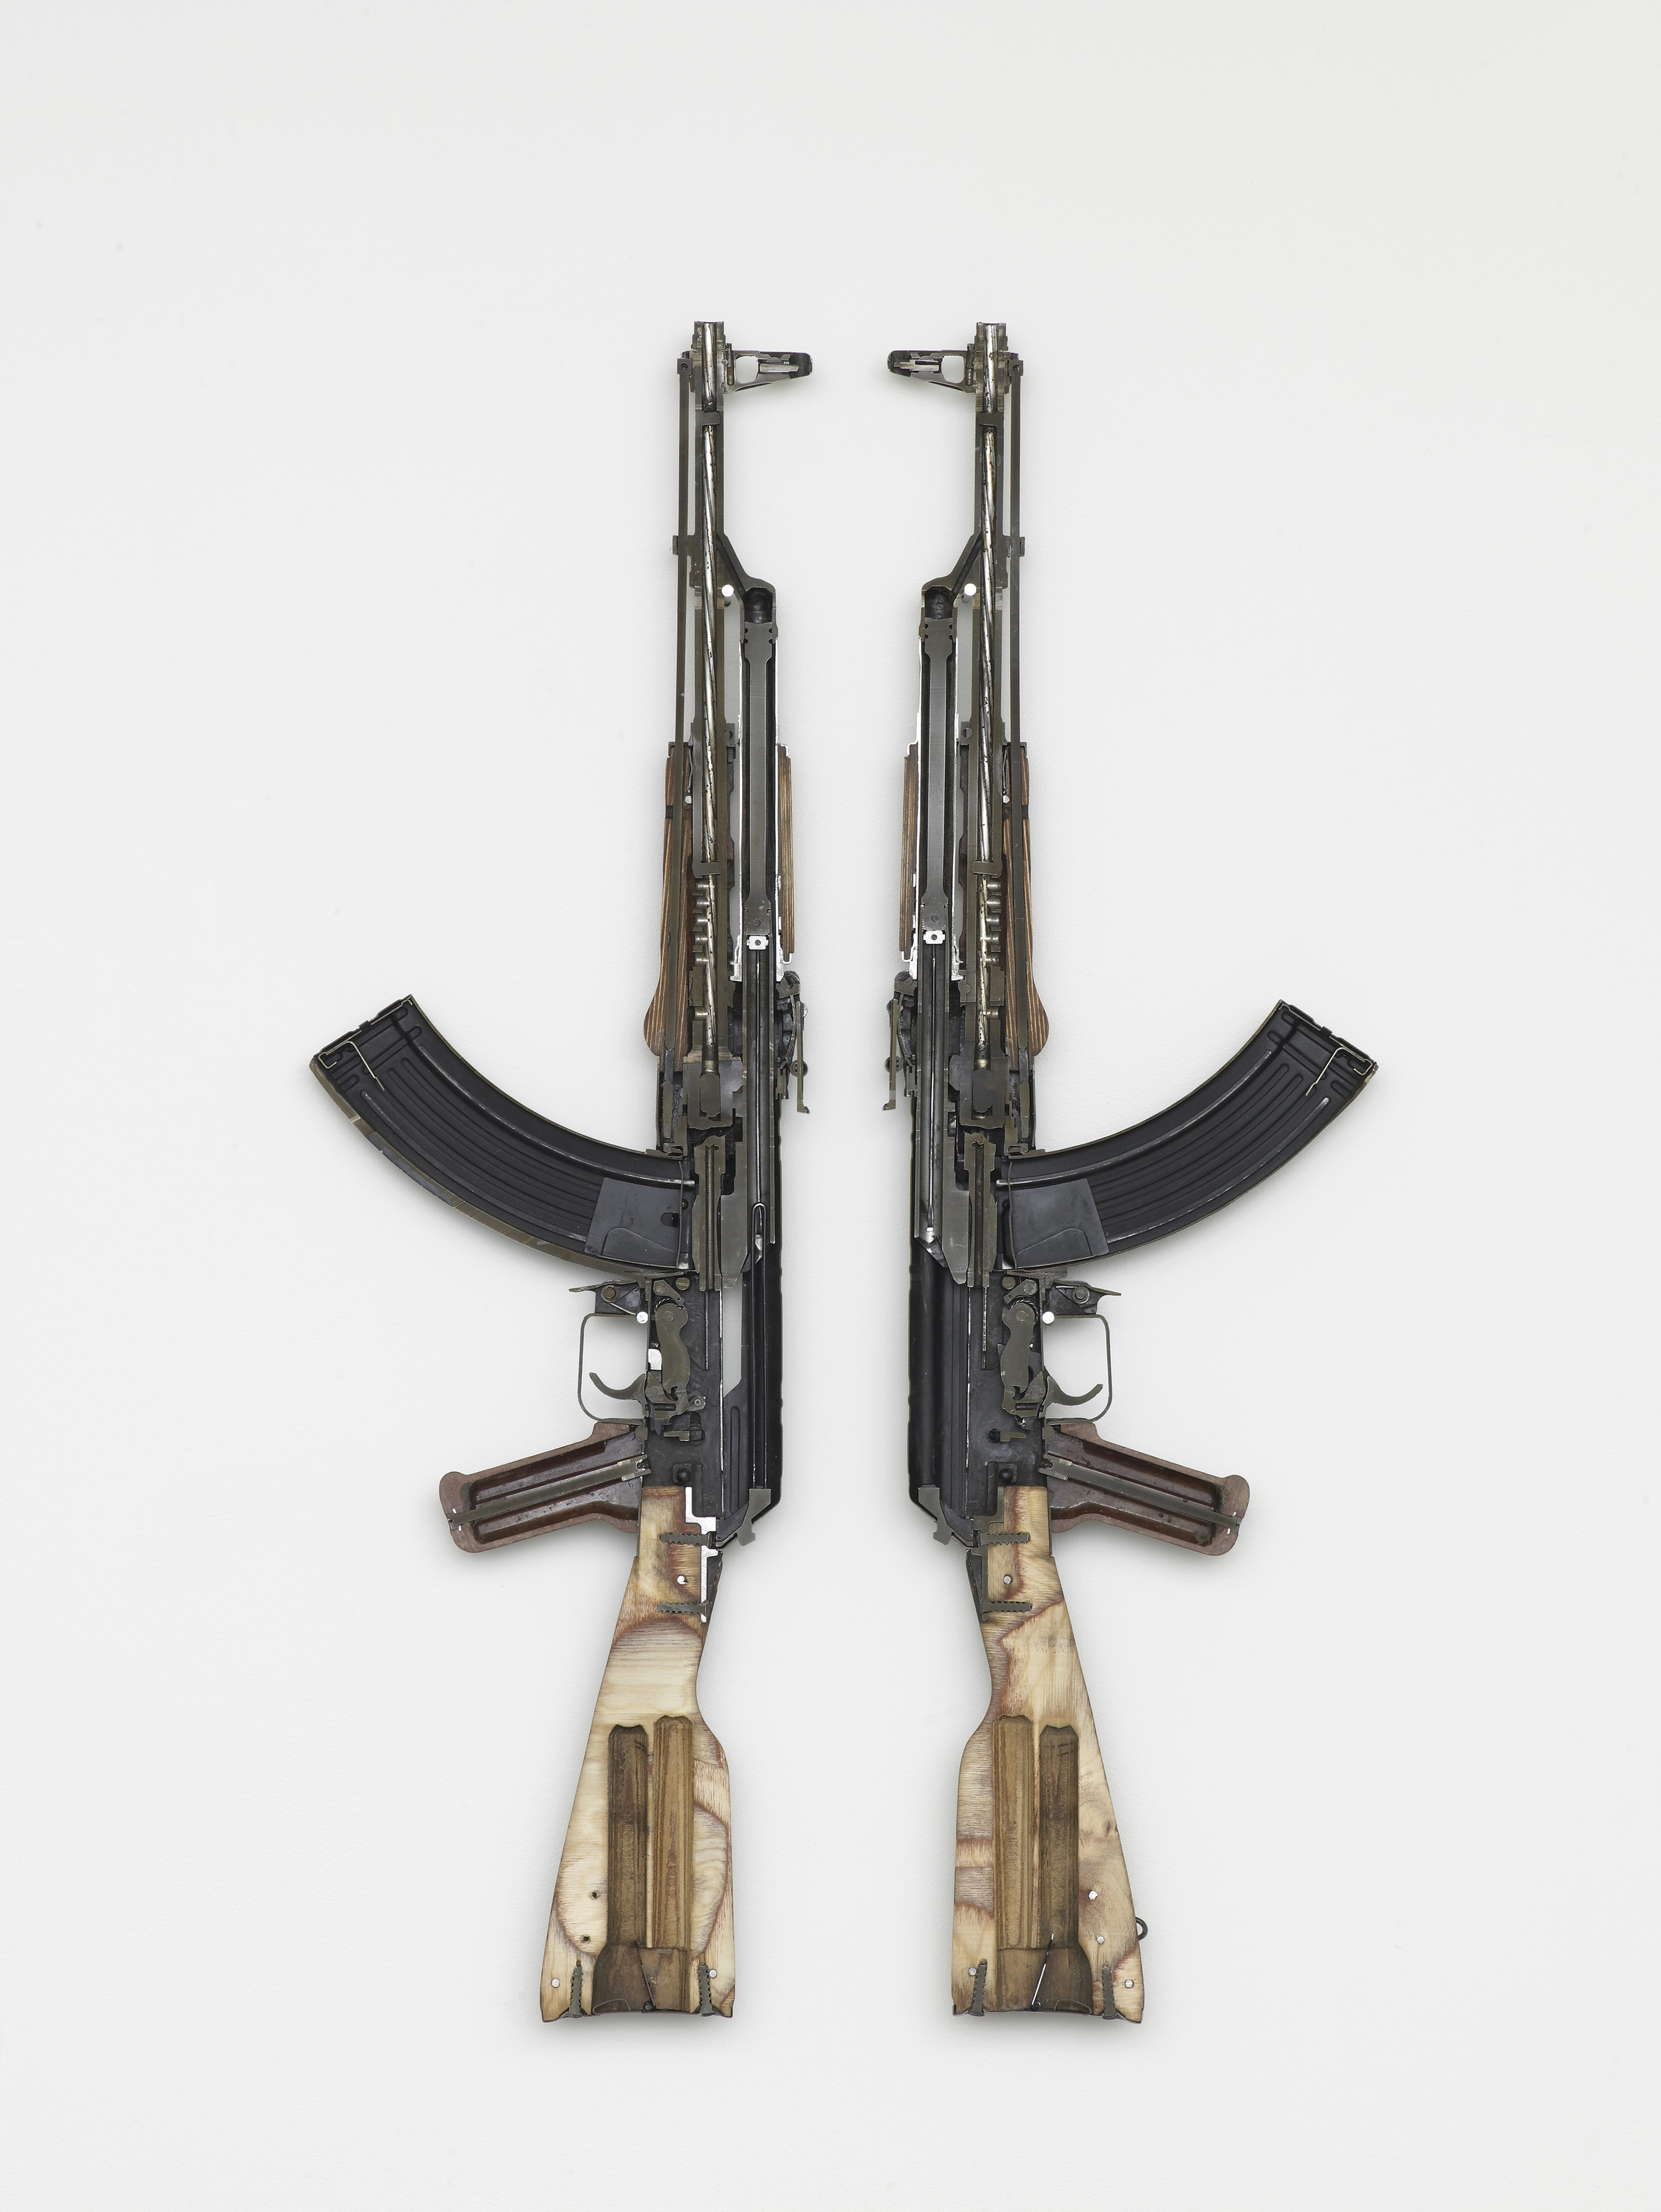     AK 47 2016 Weapon 88 x 52 x 4 cm / 34.6 x 20.4 x 1.5 in 